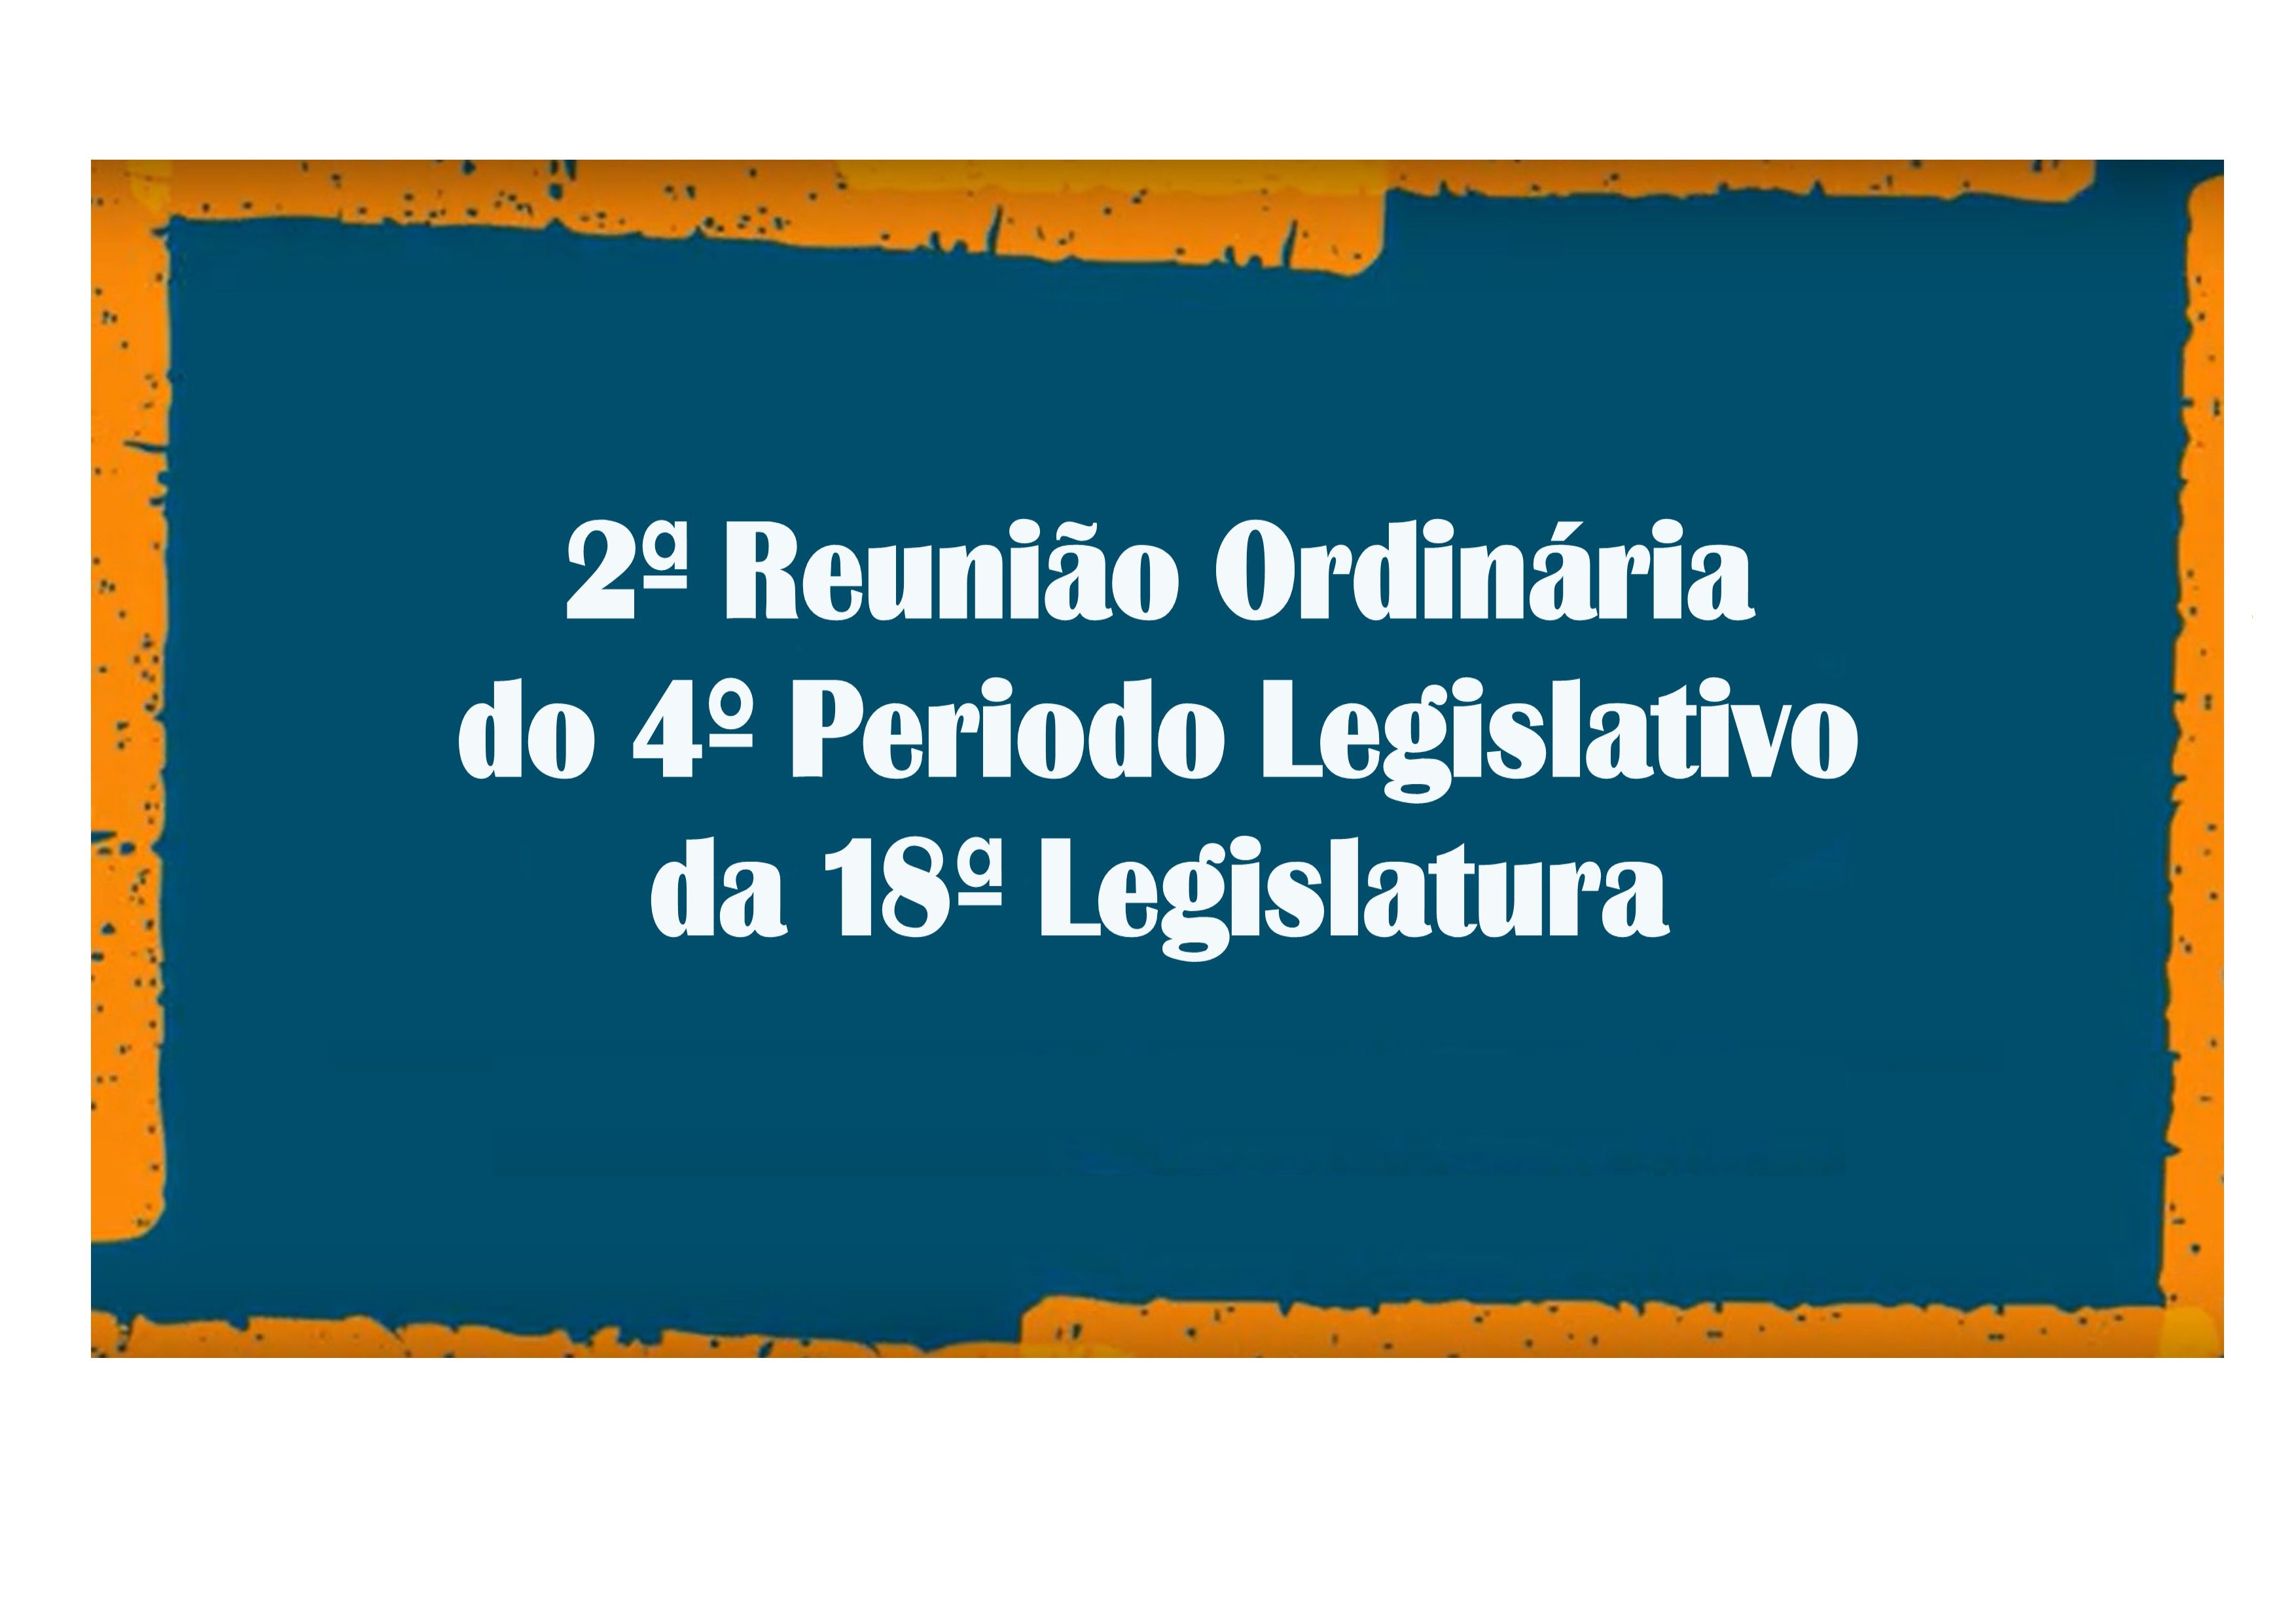 17/02/2020 - 2ª Reunião Ordinária do 4º Período Legislativo da 18ª Legislatura.